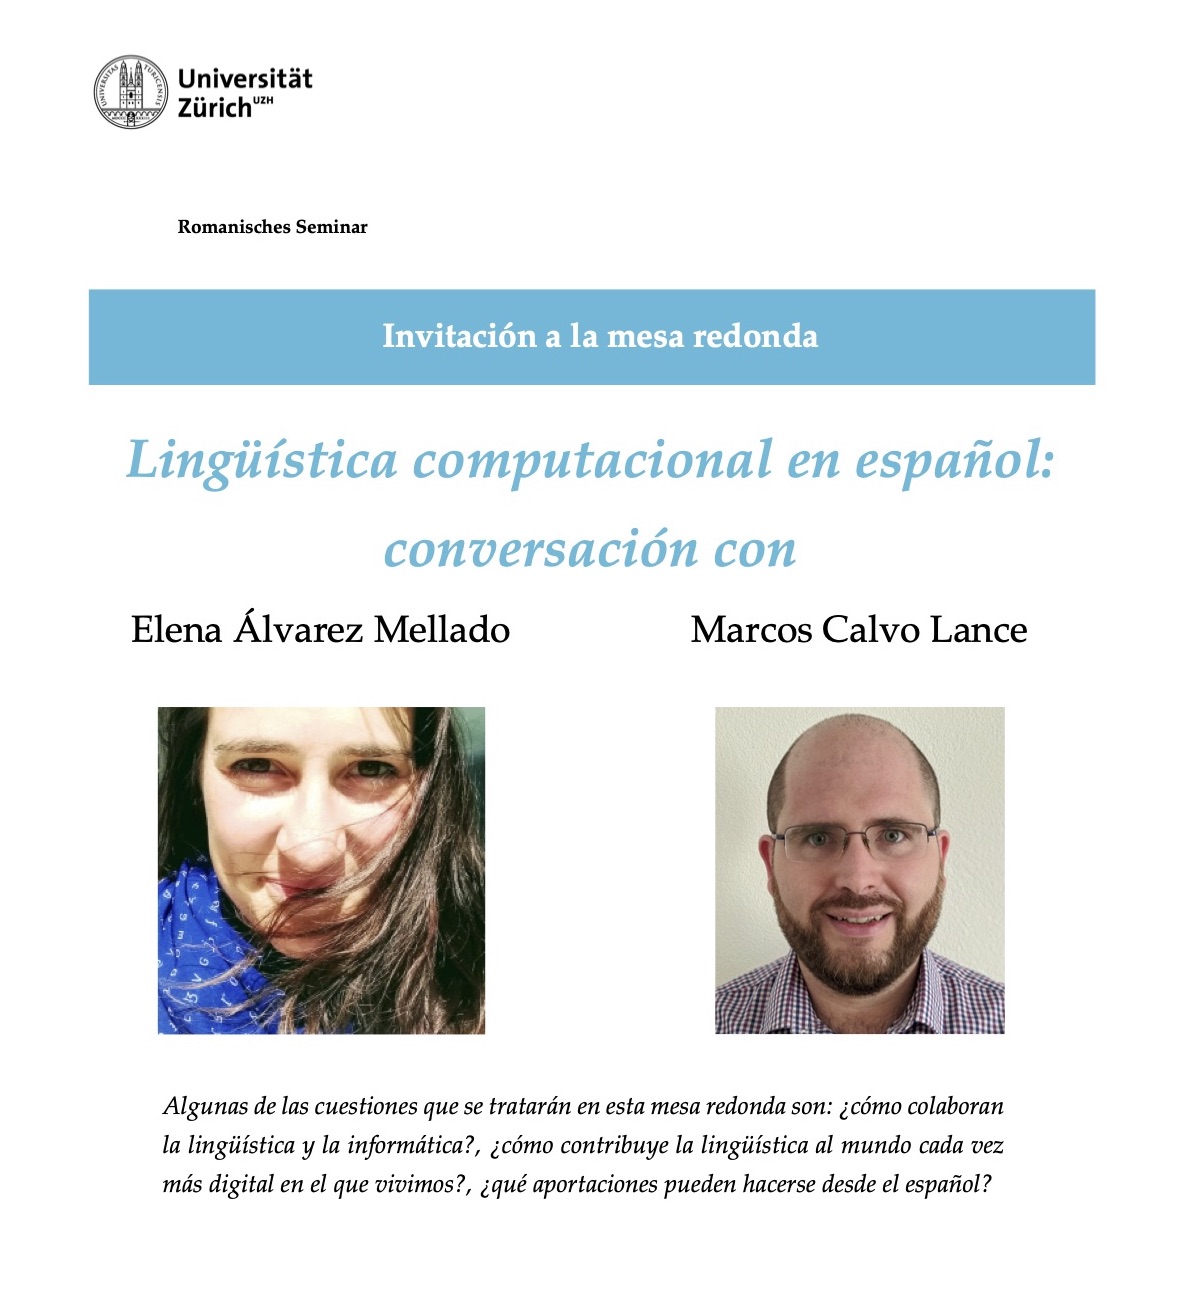 Lingüística computacional en español: conversación con Elena Álvarez Mellado y Marcos Calvo Lance